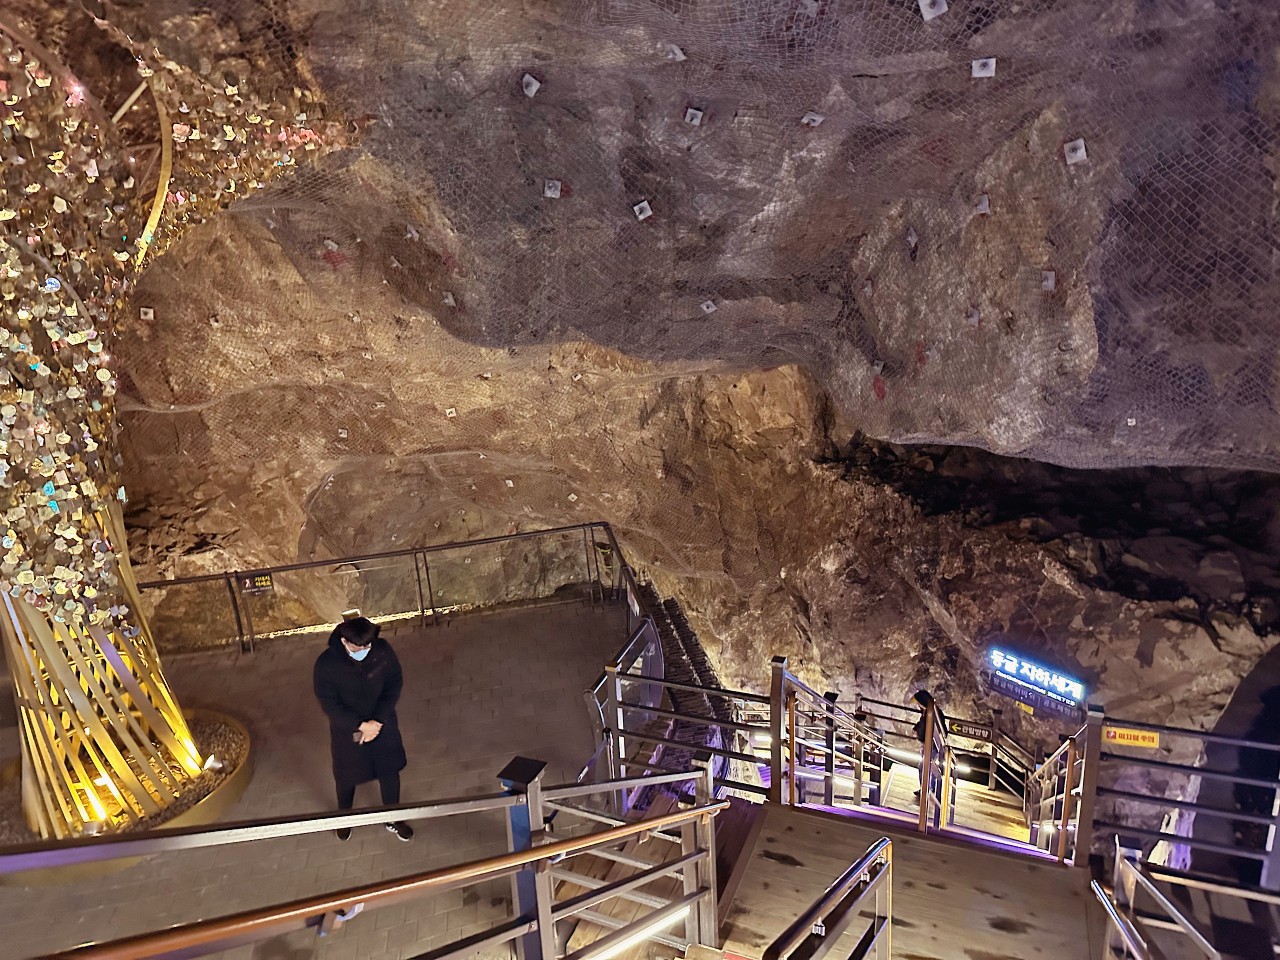 韓國首爾景點推薦 京畿道光明洞窟 一秒掉進阿凡達奇幻世界 超精彩燈光秀必看